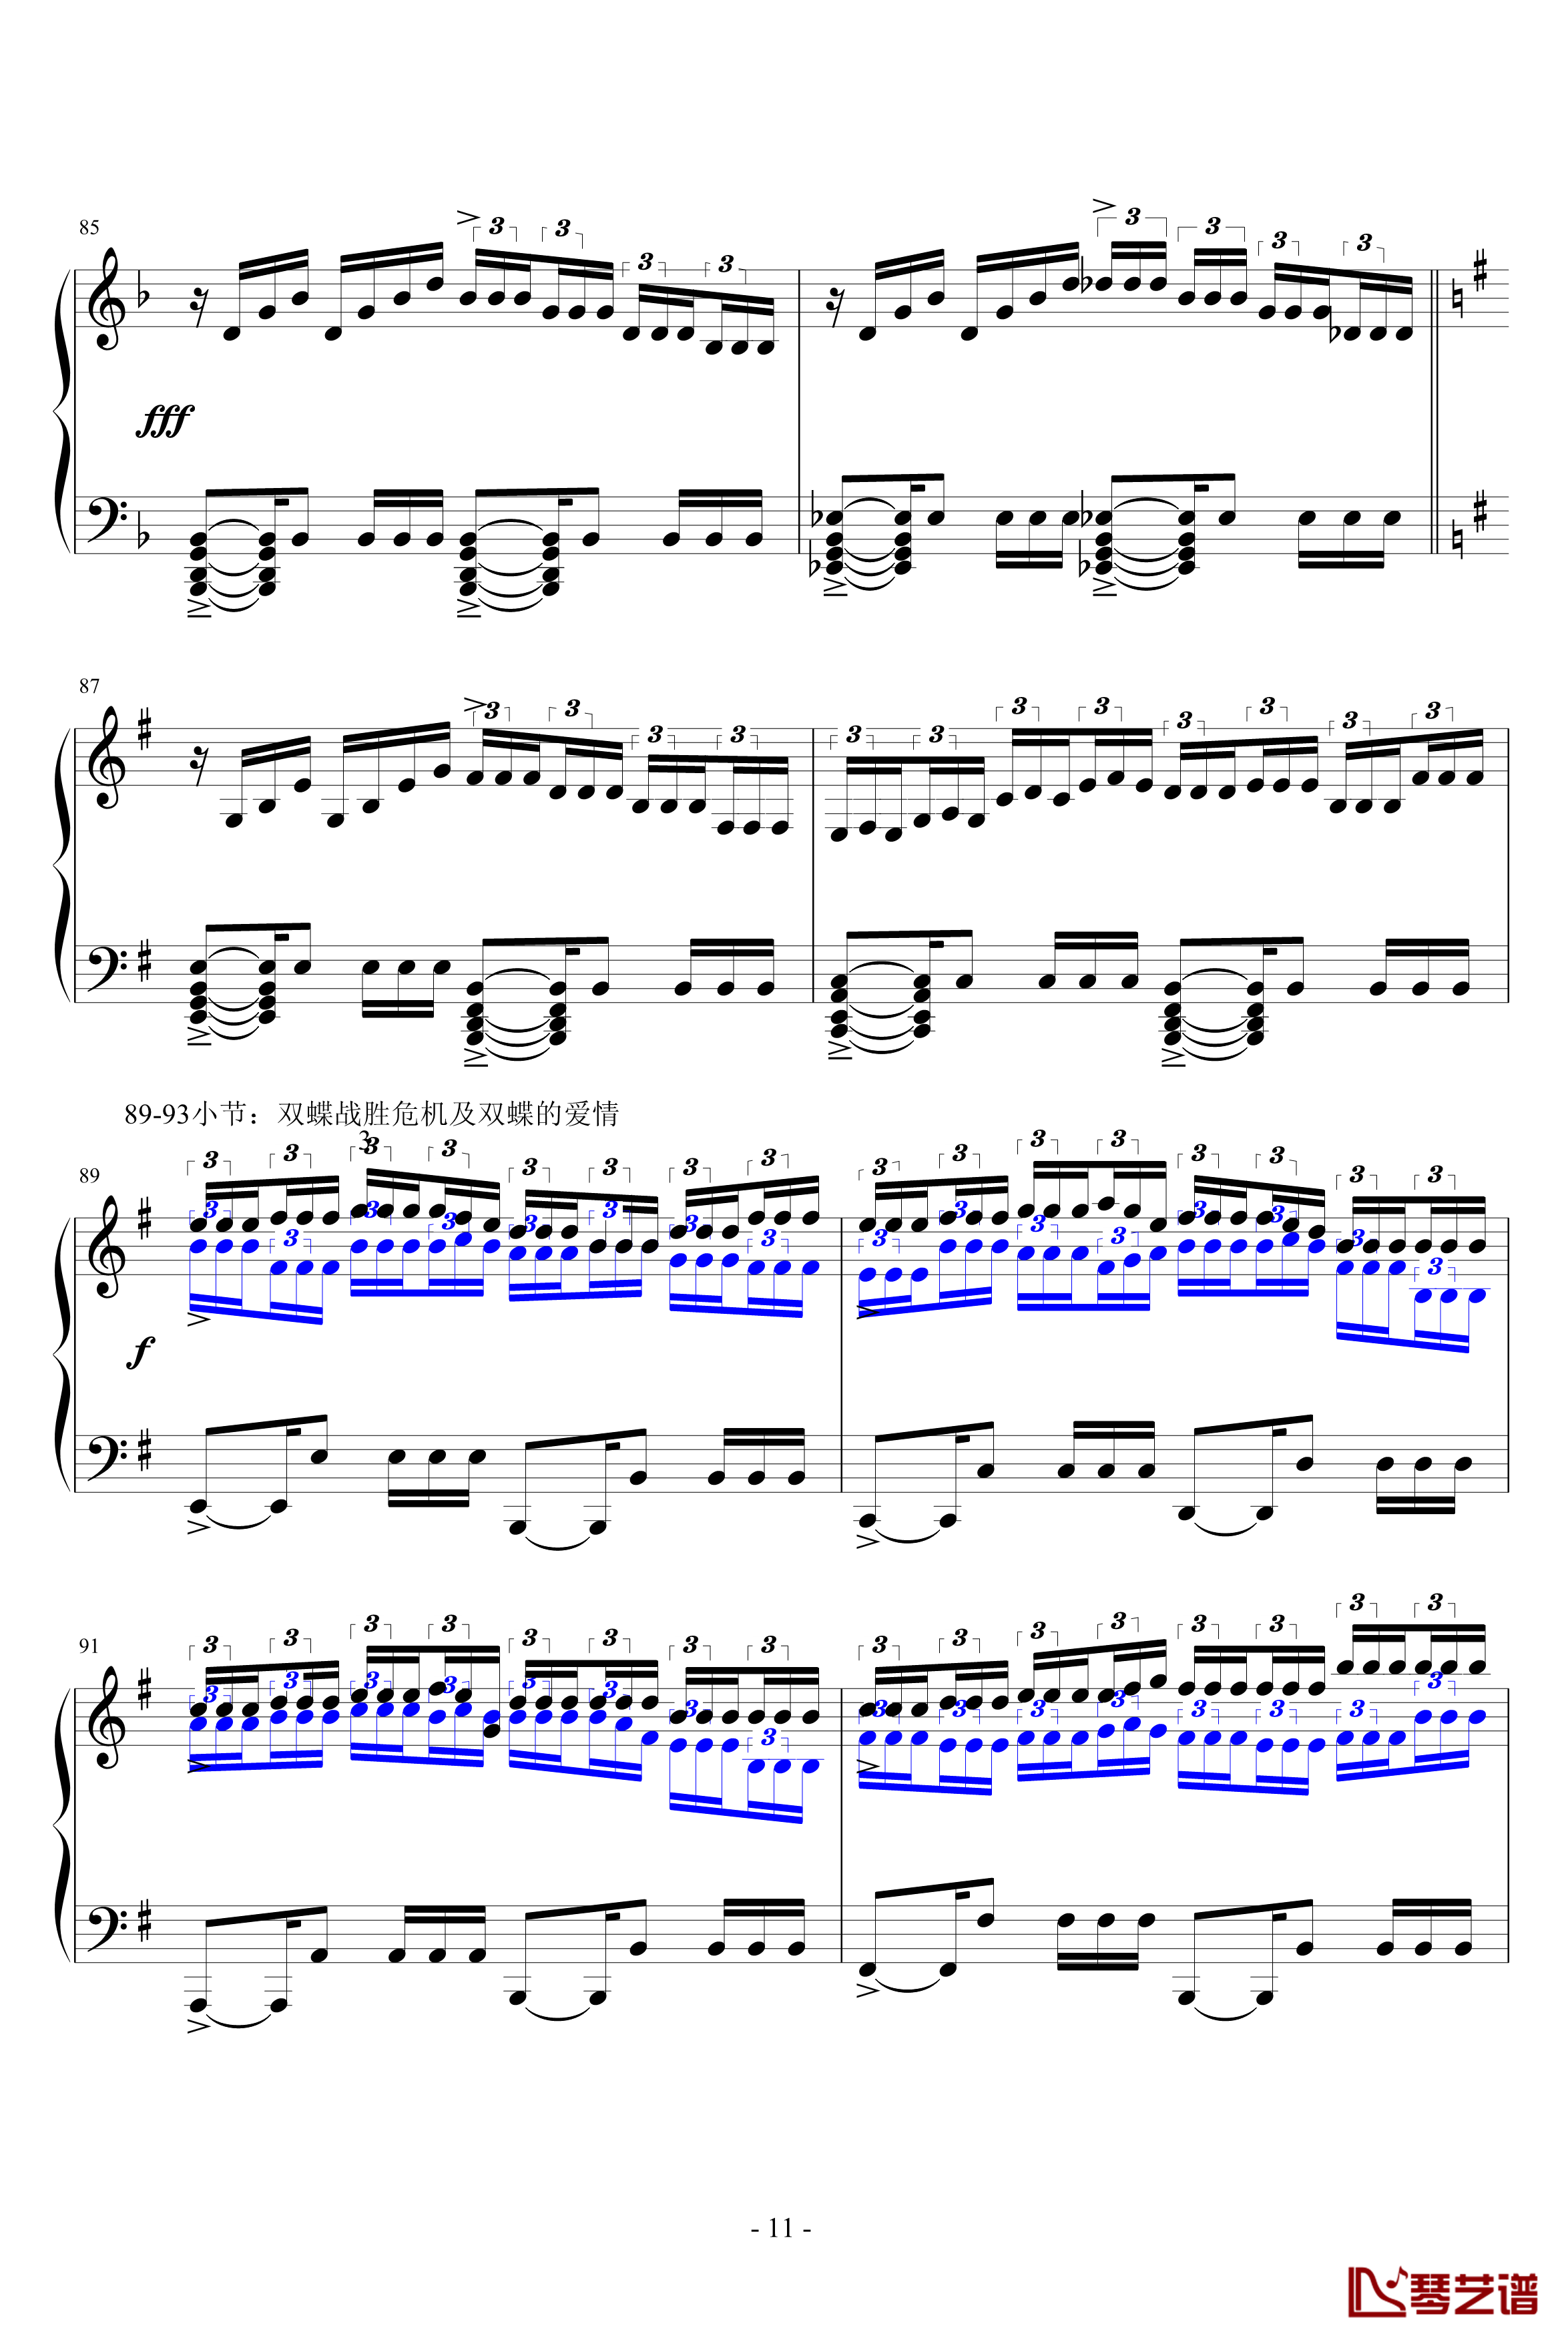 蝴蝶练习曲钢琴谱-升c小调11